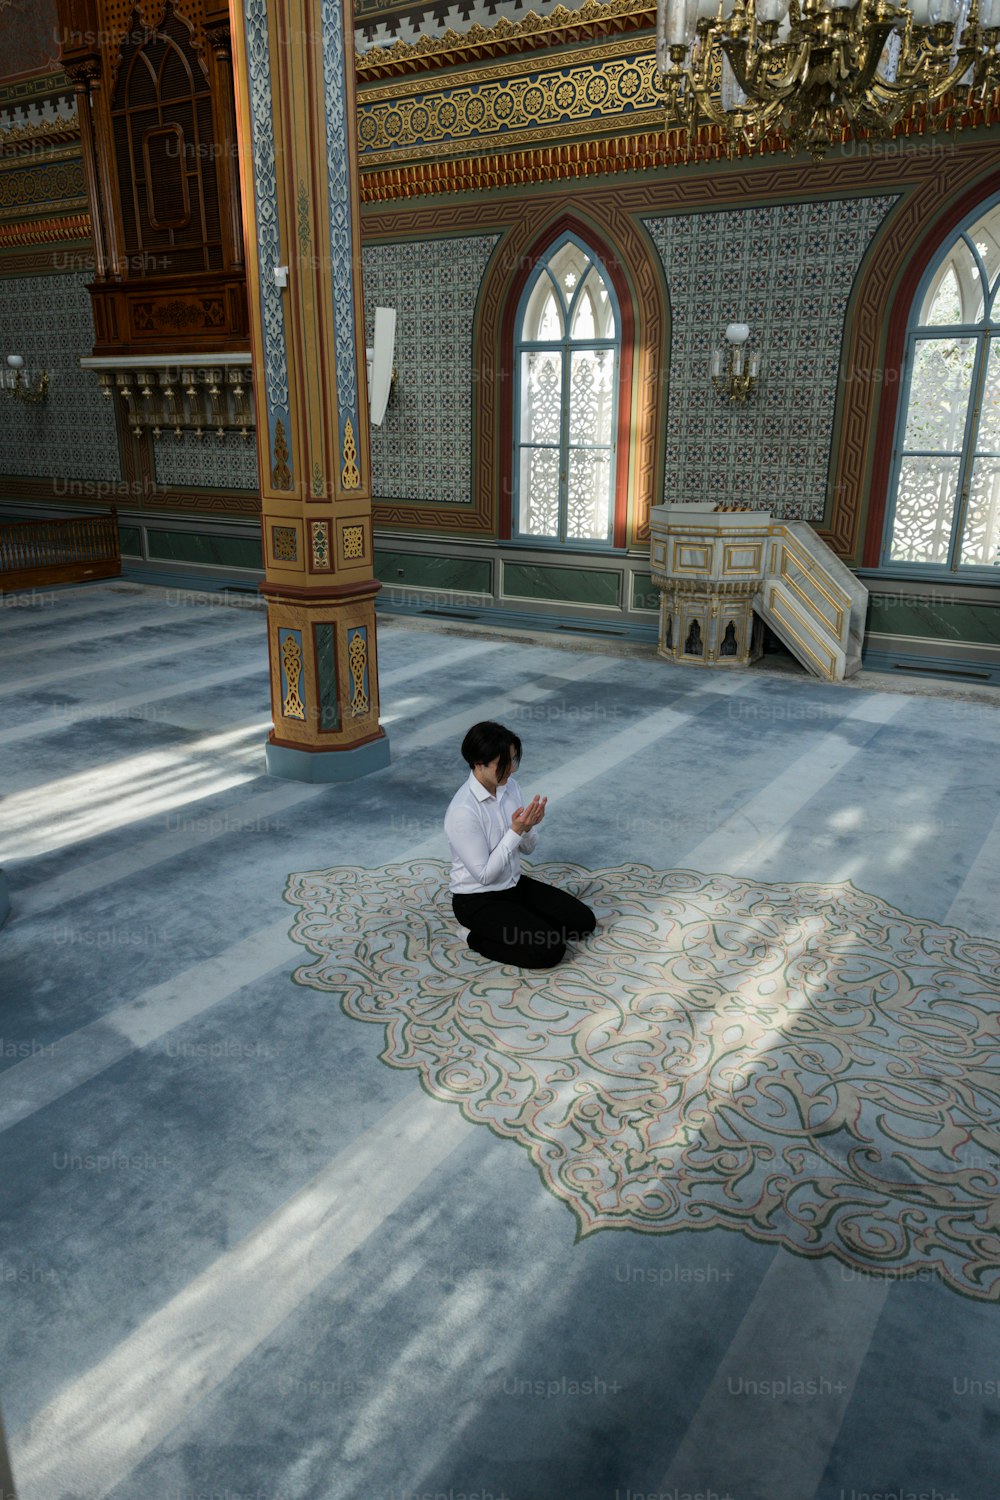 Una persona sentada en una alfombra en una habitación